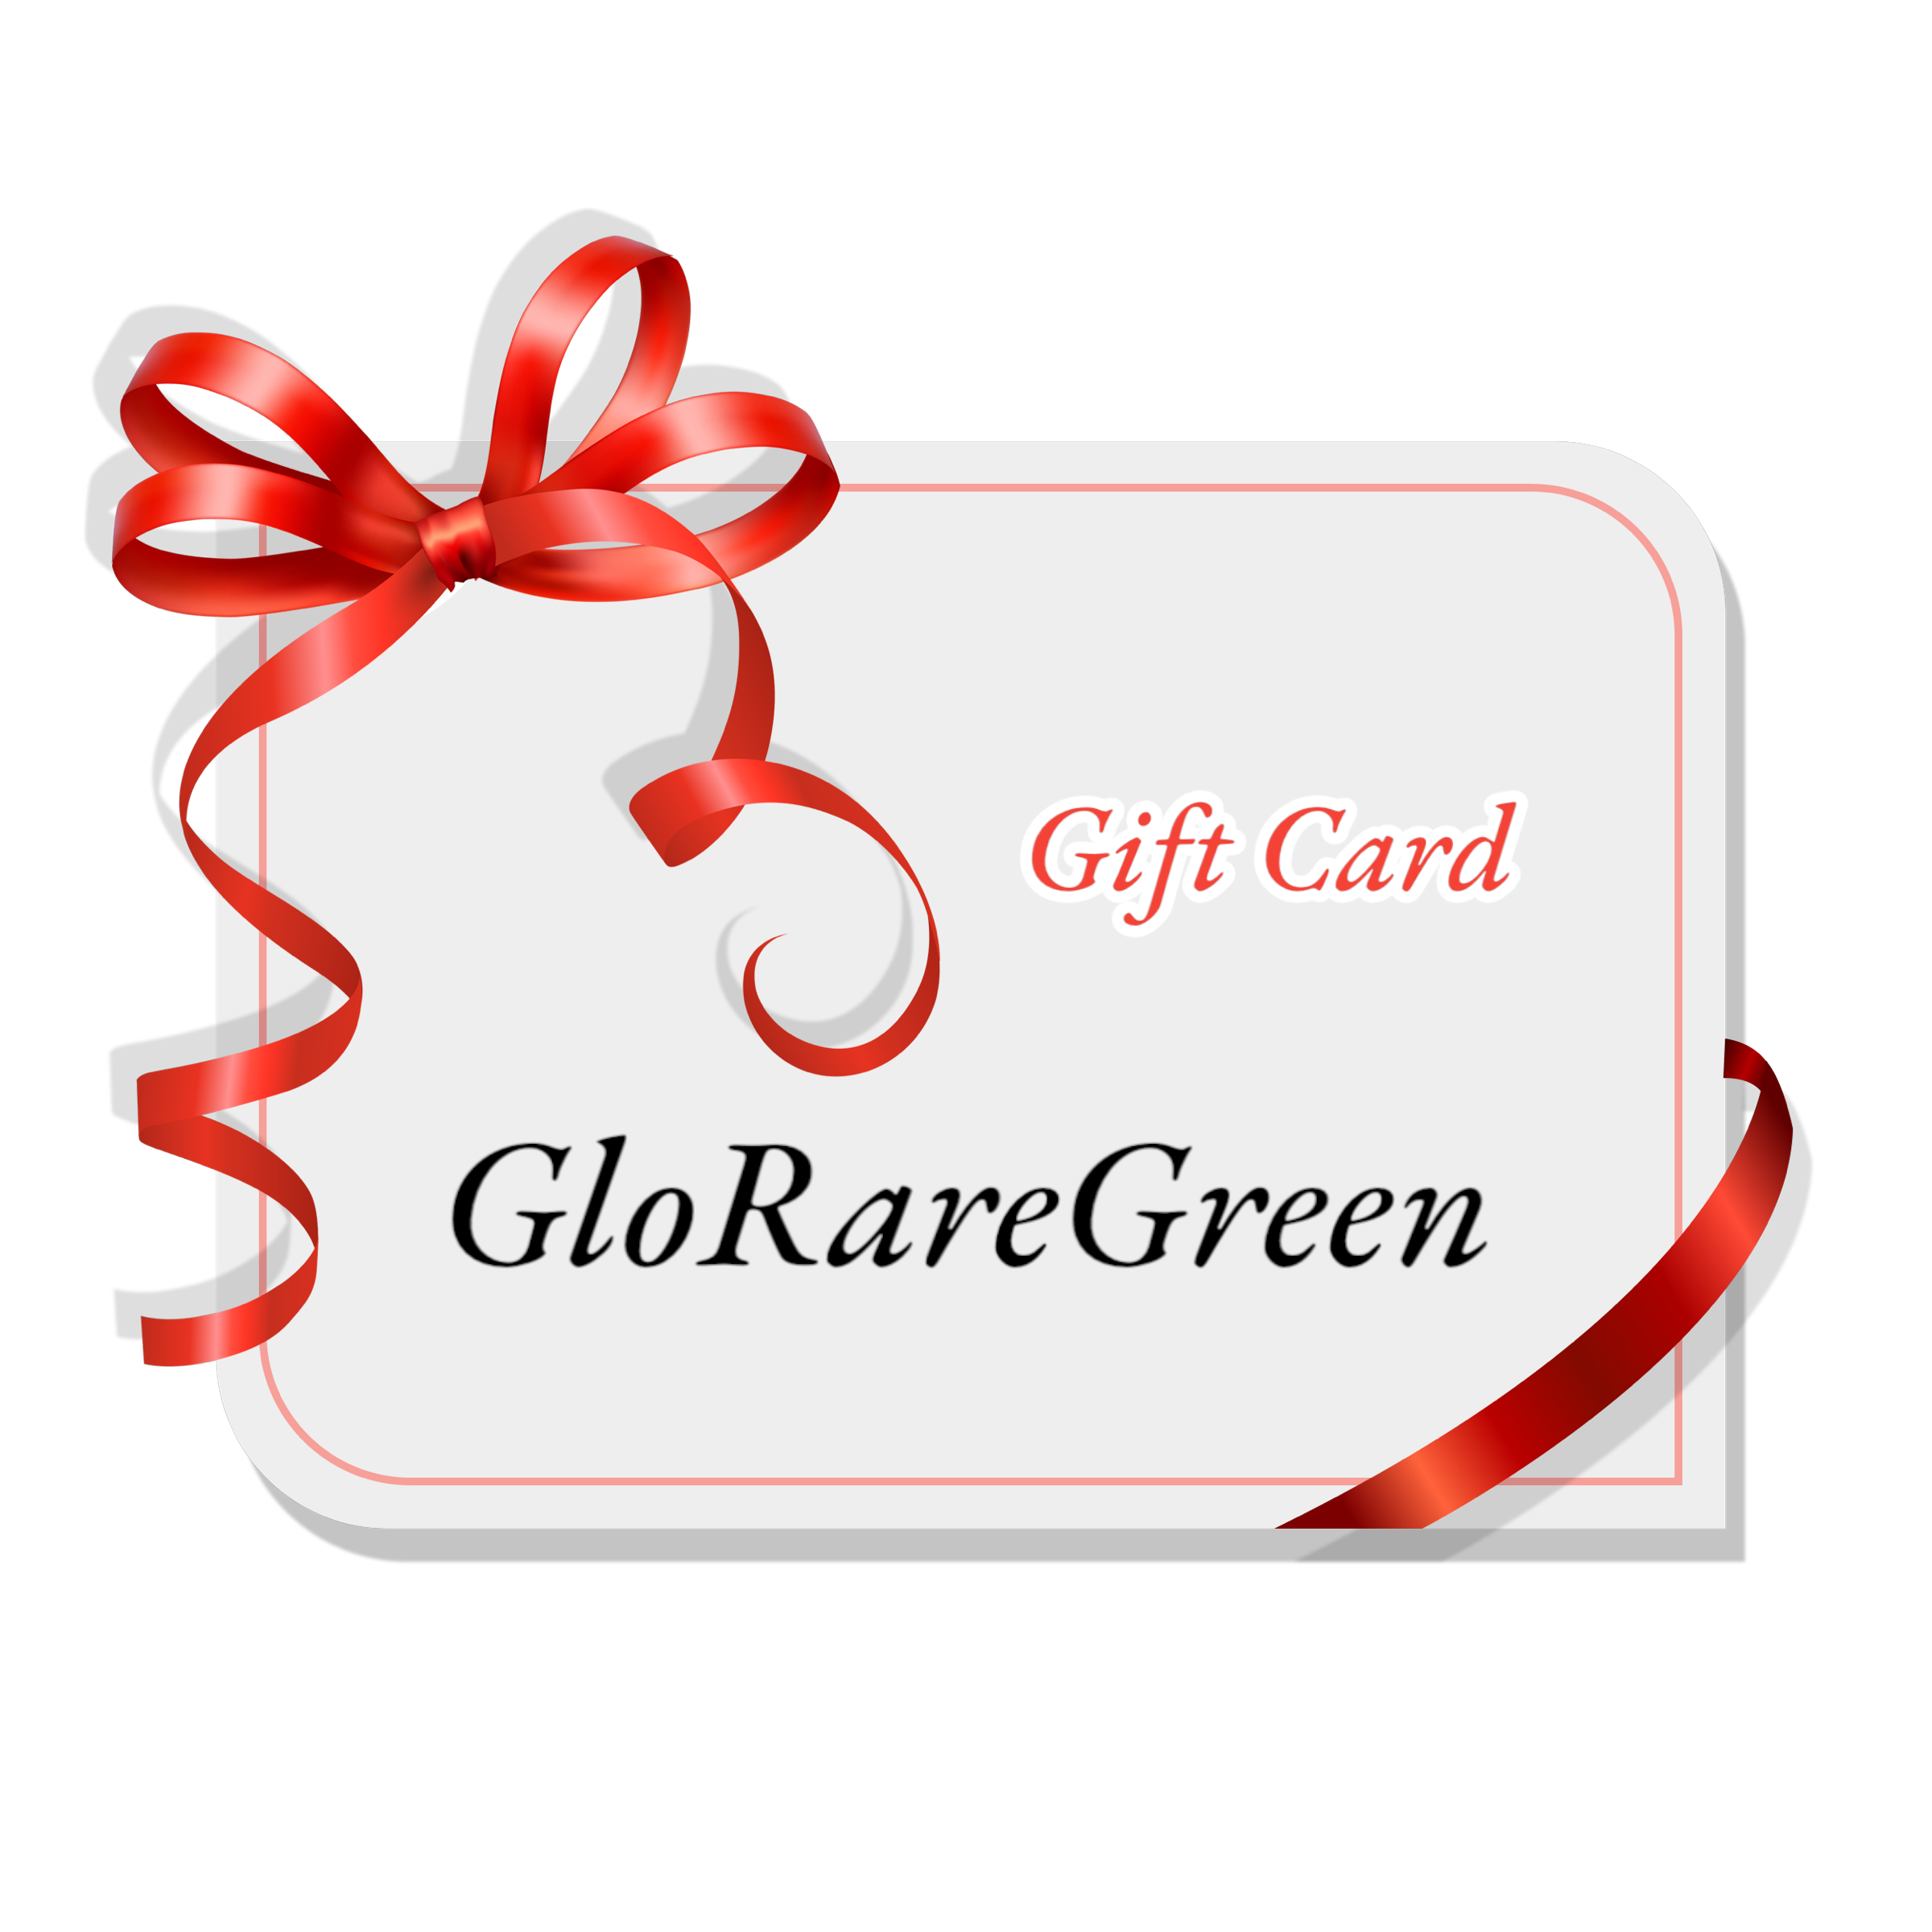 GloRareGreen Gift Card